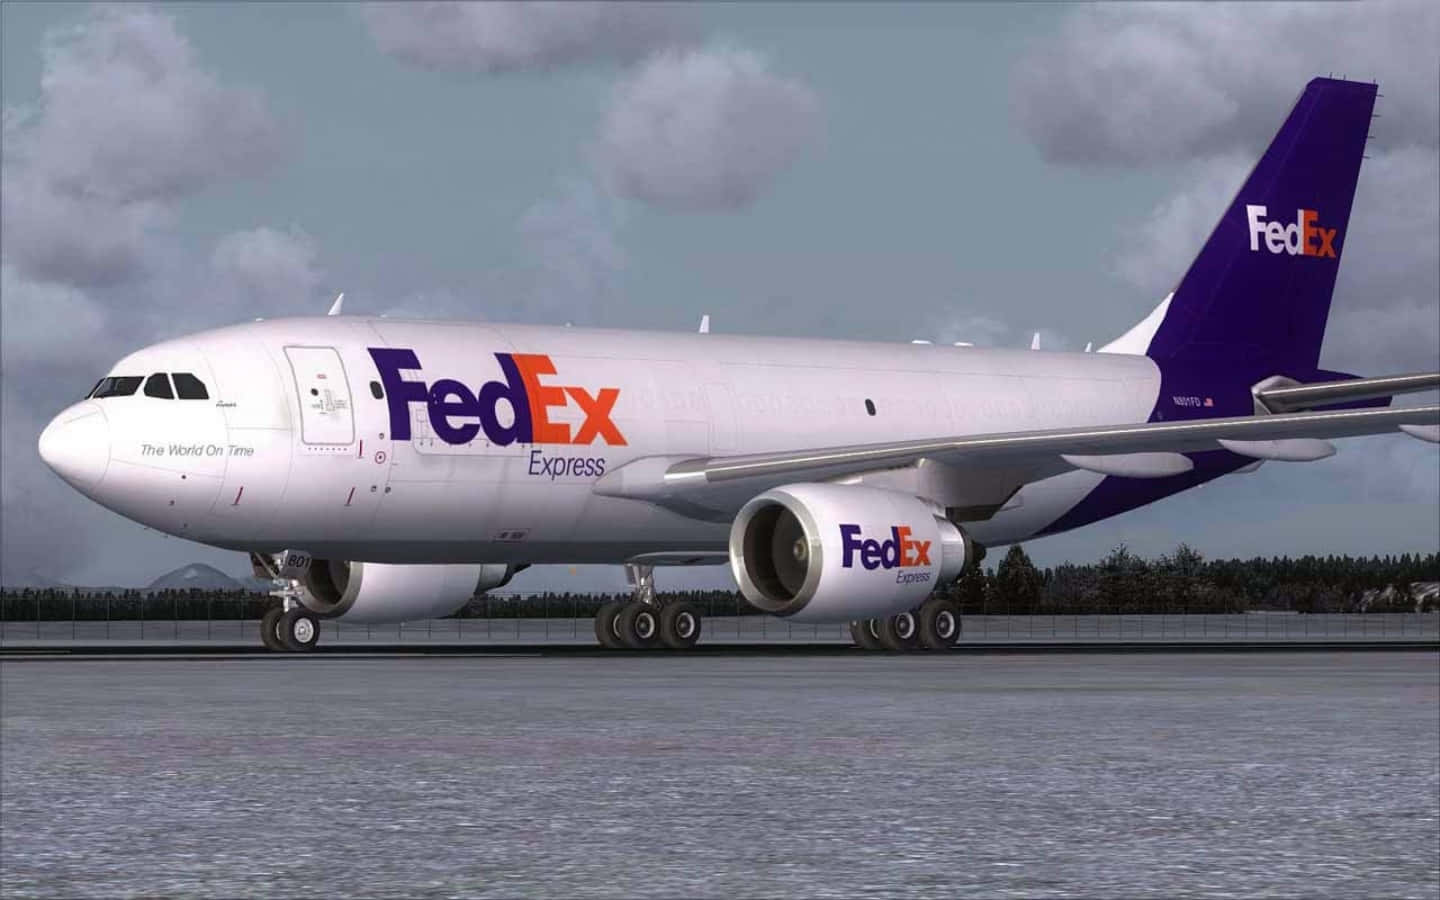 Fedexb747-400 - Fsx